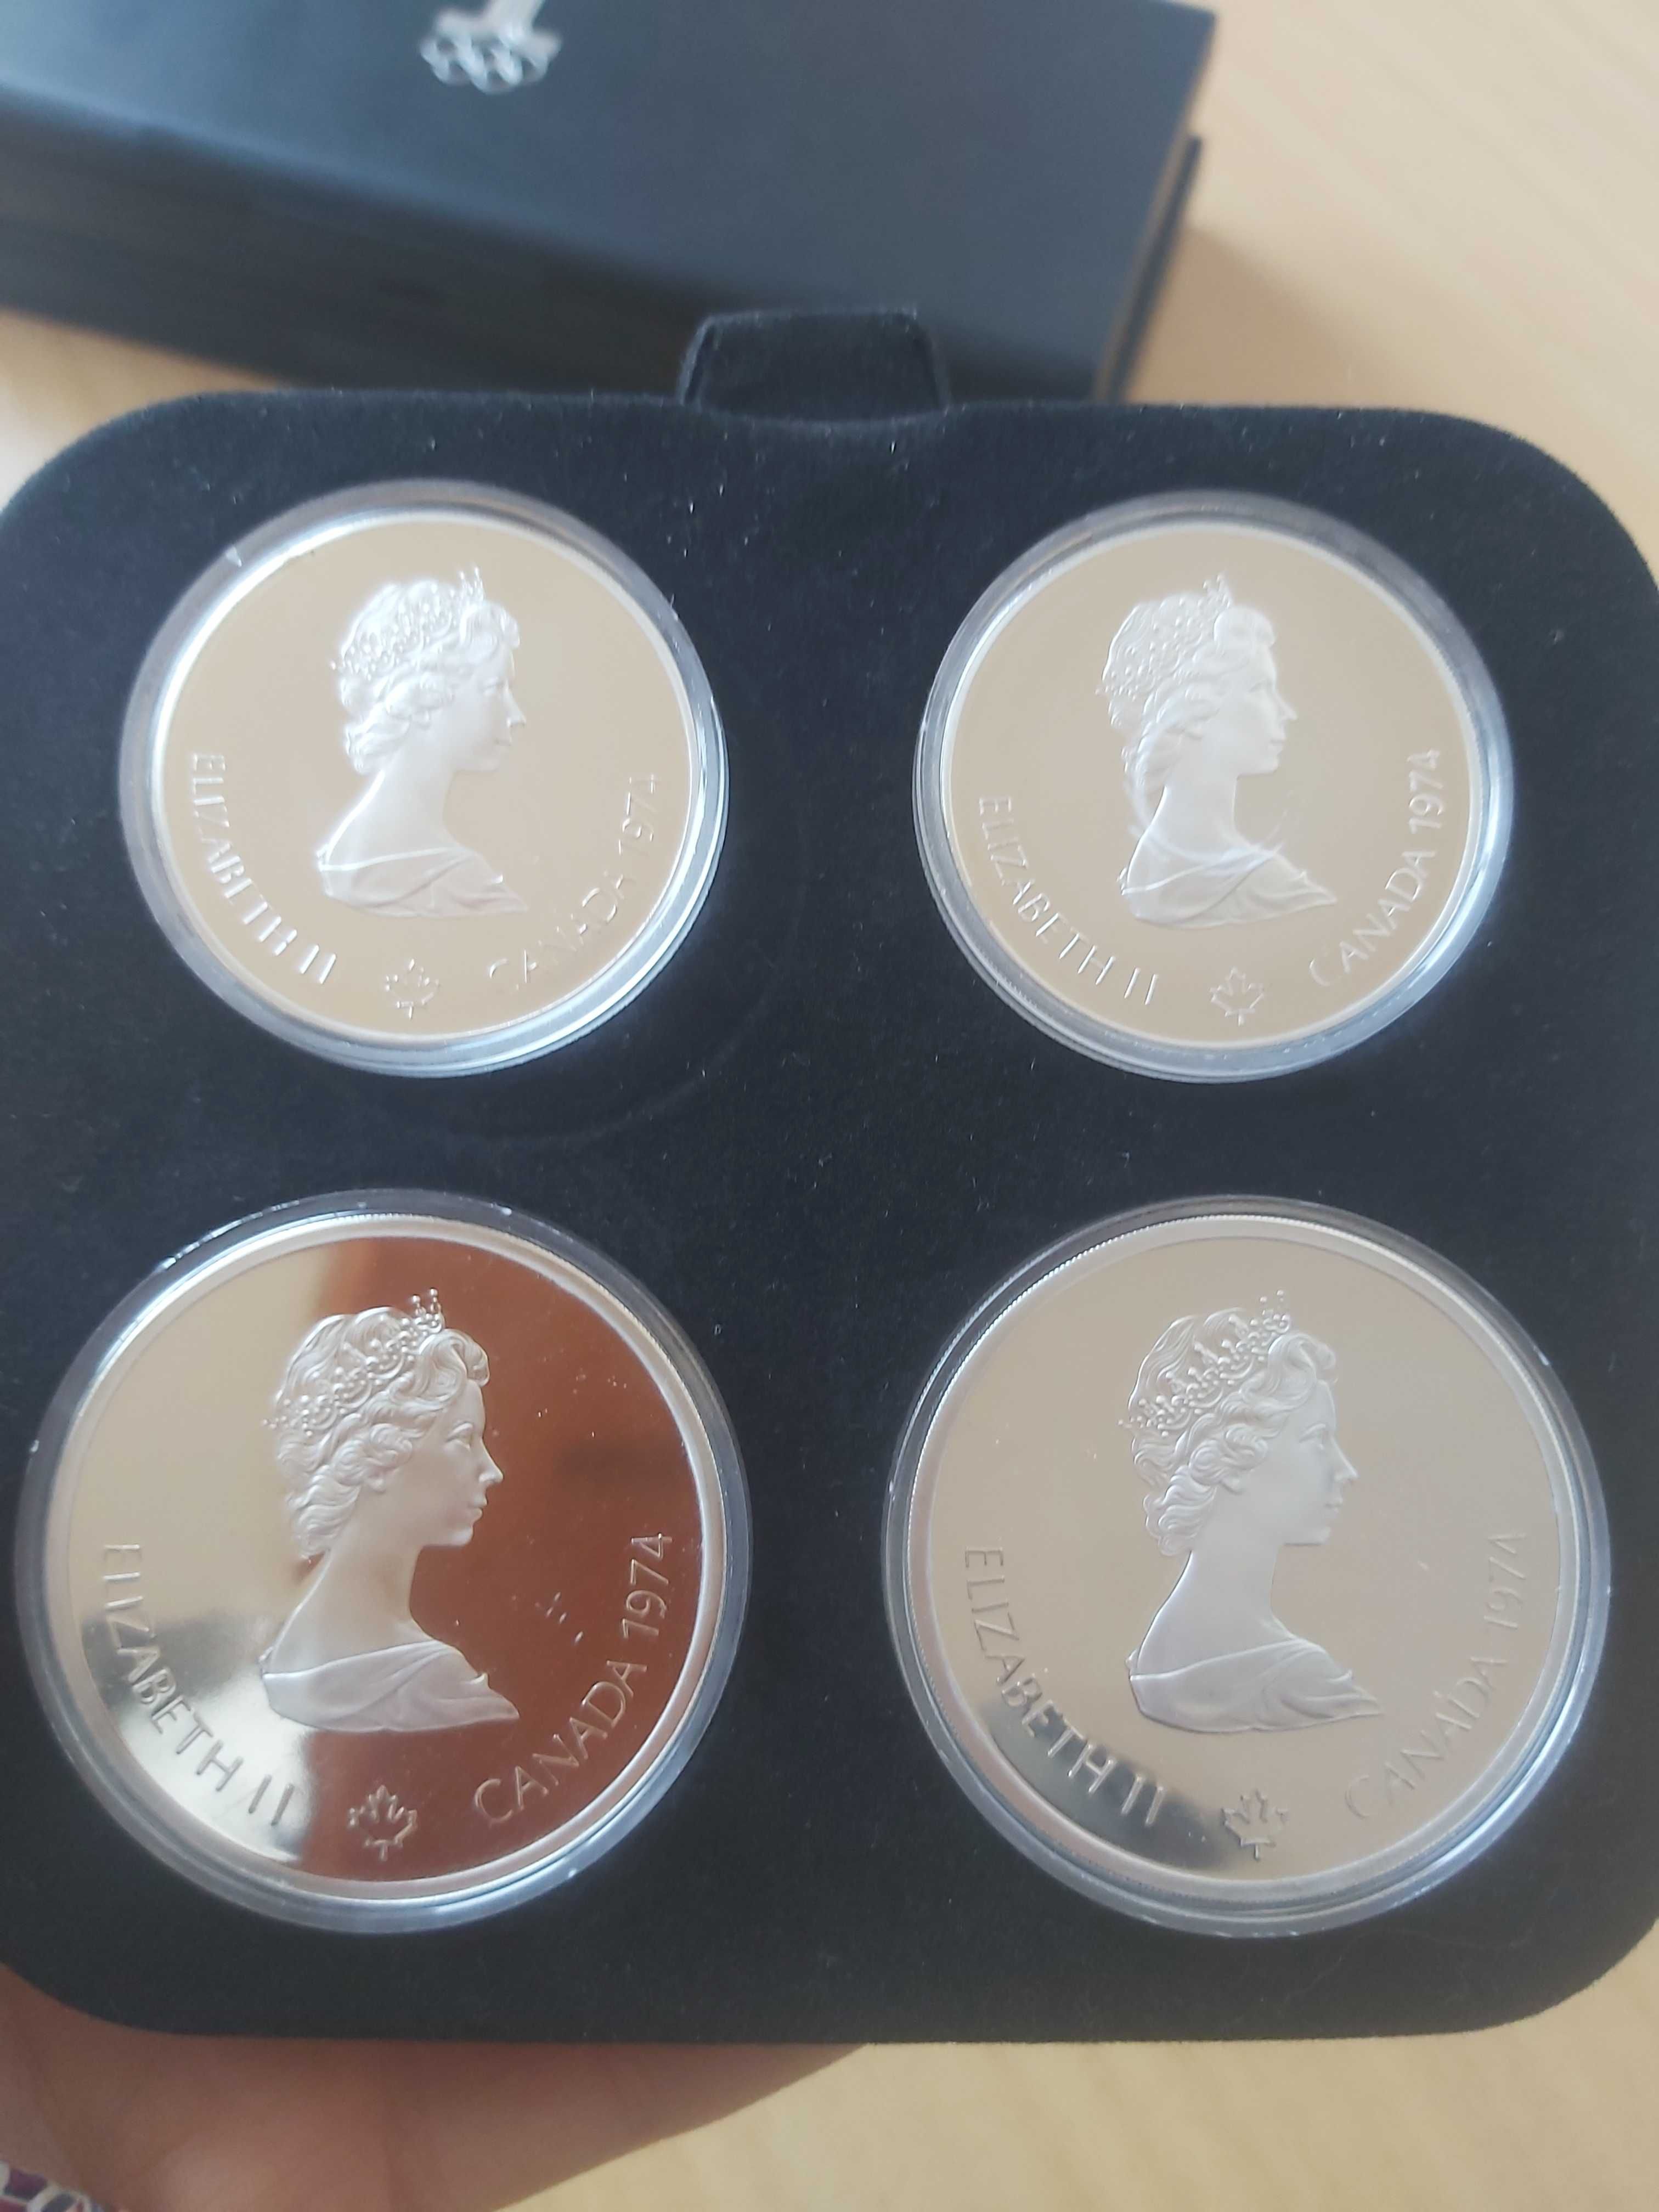 Колекция сребърни монети